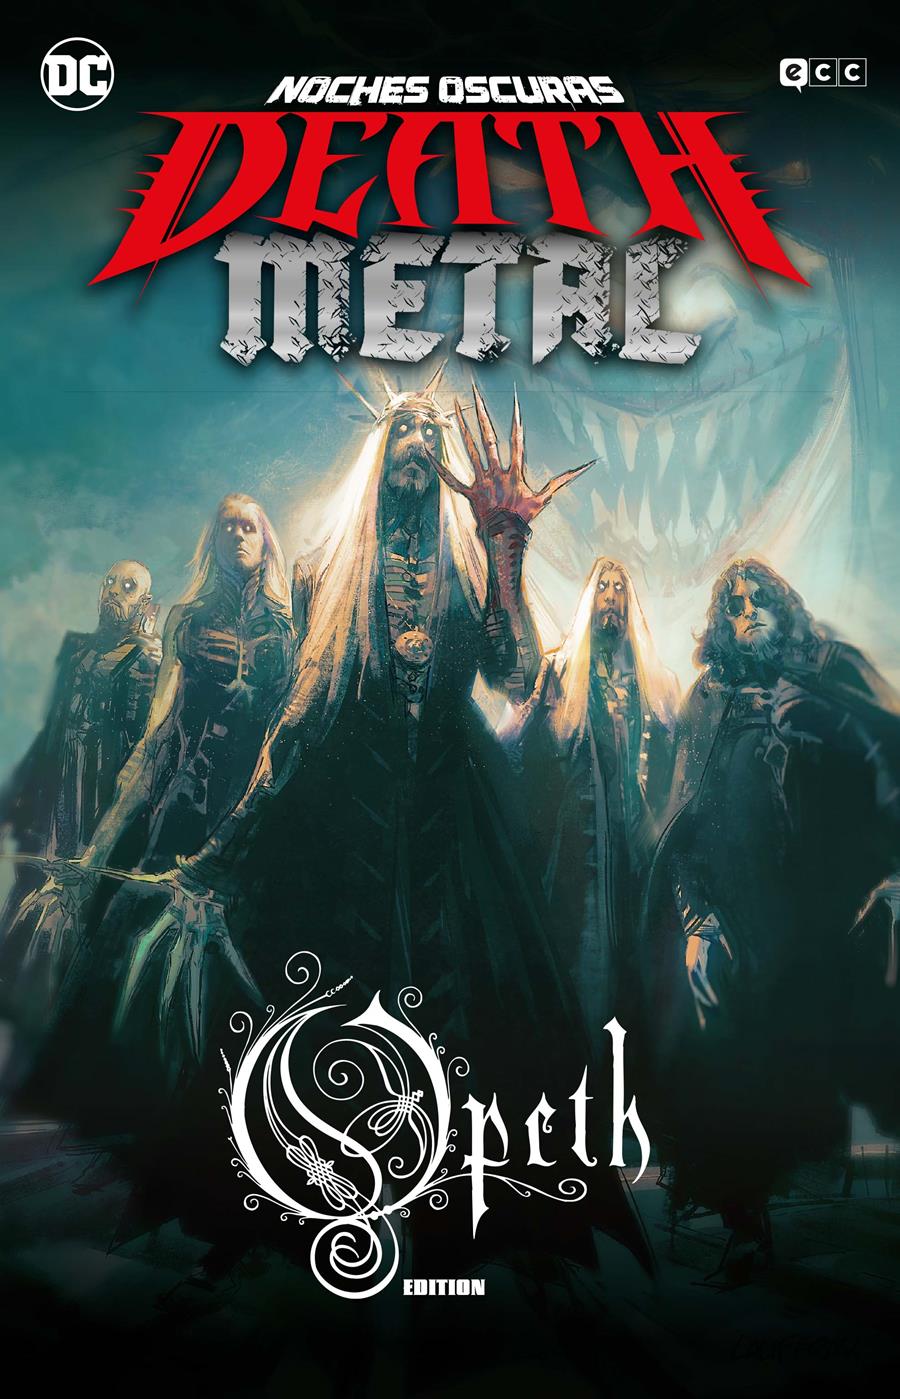 Noches oscuras: Death Metal núm. 4 (Opeth Band Edition) (Rústica) | N0621-ECC29 | Greg Capullo / Scott Snyder | Terra de Còmic - Tu tienda de cómics online especializada en cómics, manga y merchandising